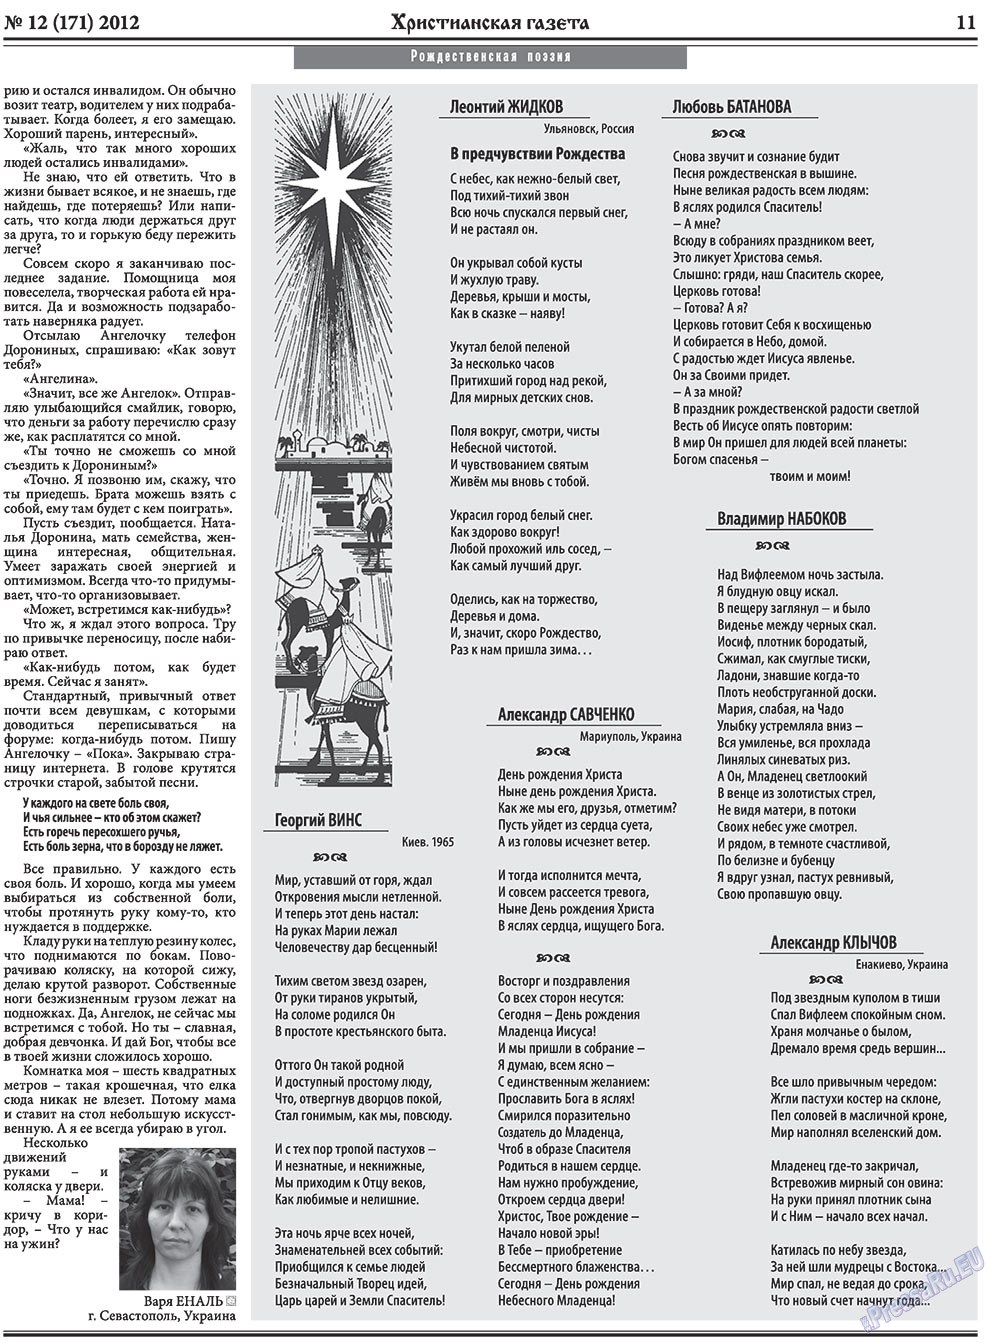 Христианская газета, газета. 2012 №12 стр.11